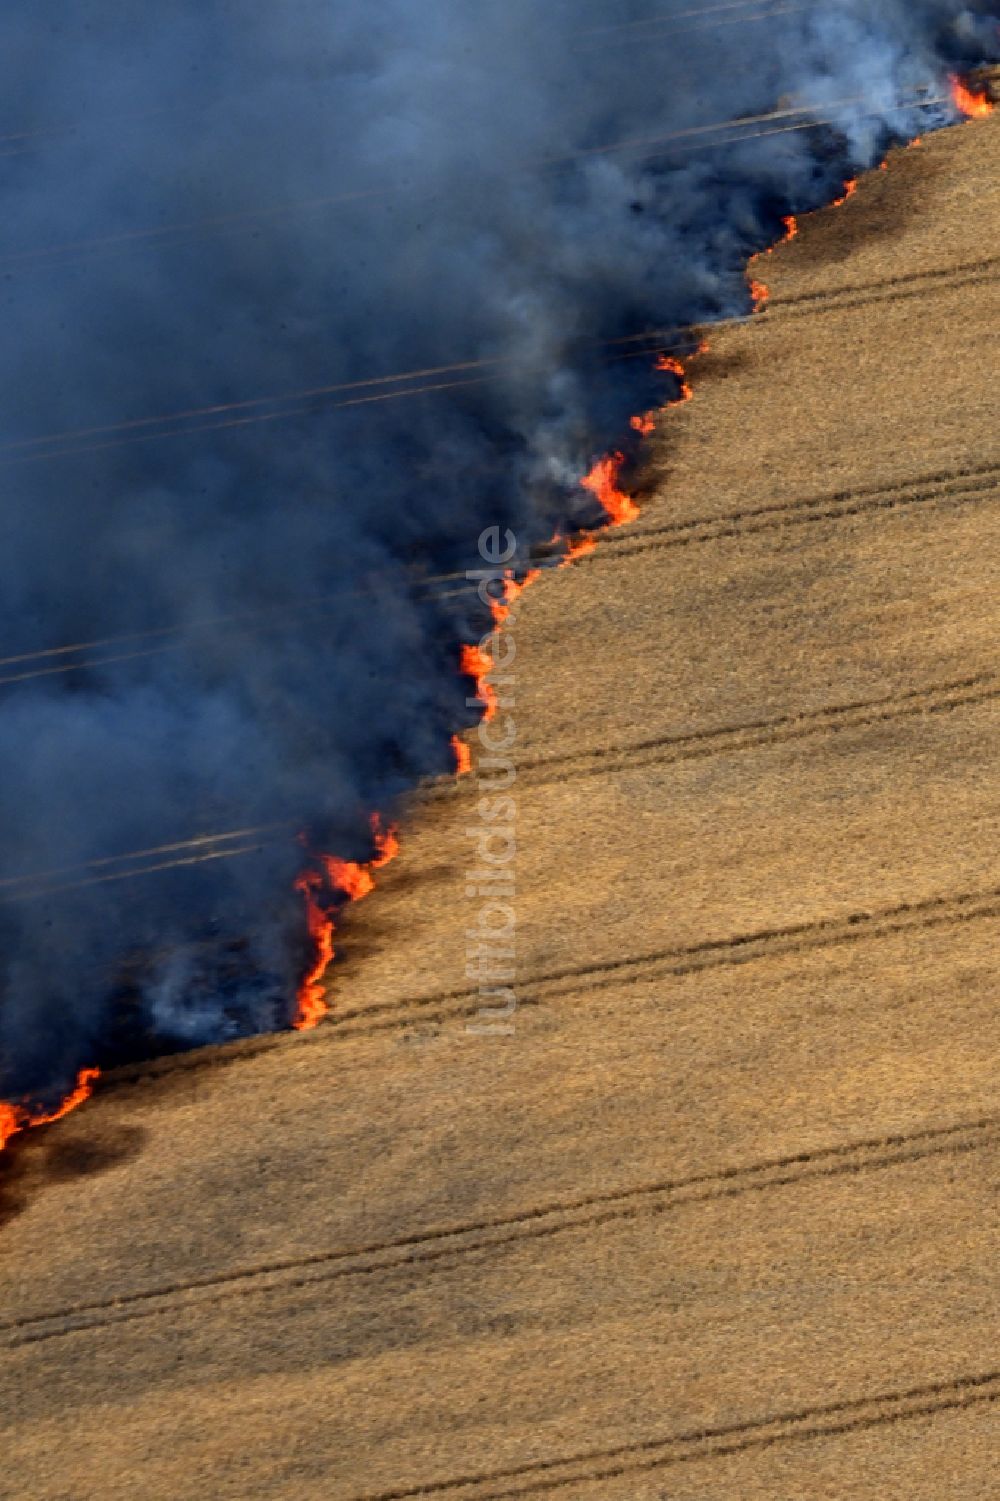 Luftbild Schwanebeck - Rauchschwaden eines Brandes in einem Getreidefeld in Schwanebeck im Bundesland Brandenburg, Deutschland